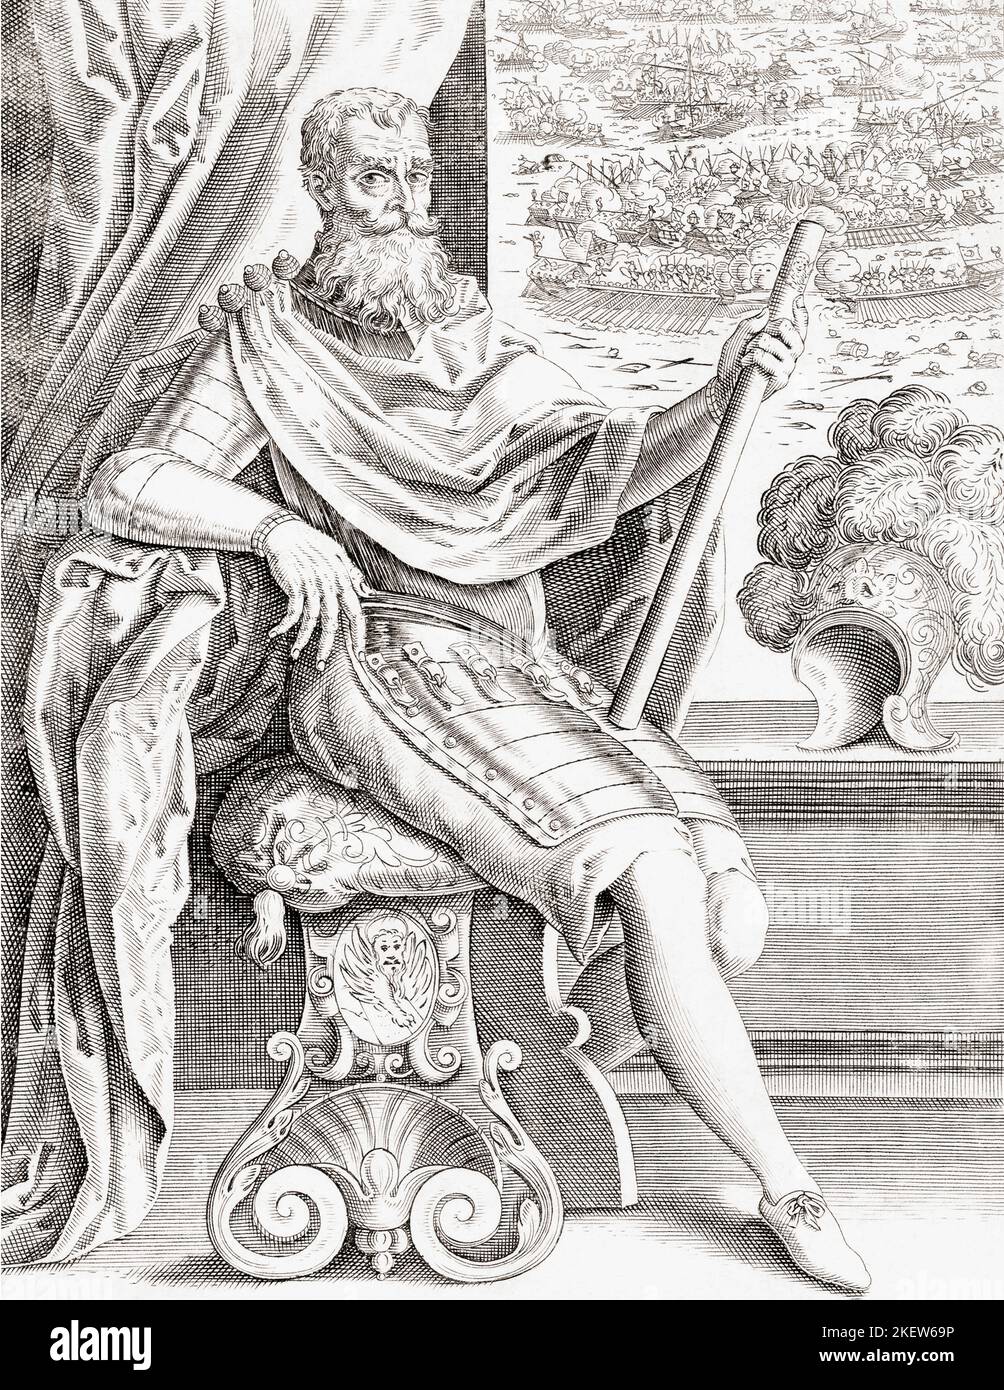 Sebastiano Venier, c. 1496 - 1578. (También conocido como Sebastiano Veniero). Fue comandante de la flota veneciana durante la Batalla de Lepanto en 1571 y seis años más tarde, a la edad de 81 años, fue elegido Doge de Venecia. Después de una obra anónima del siglo 17th. Foto de stock